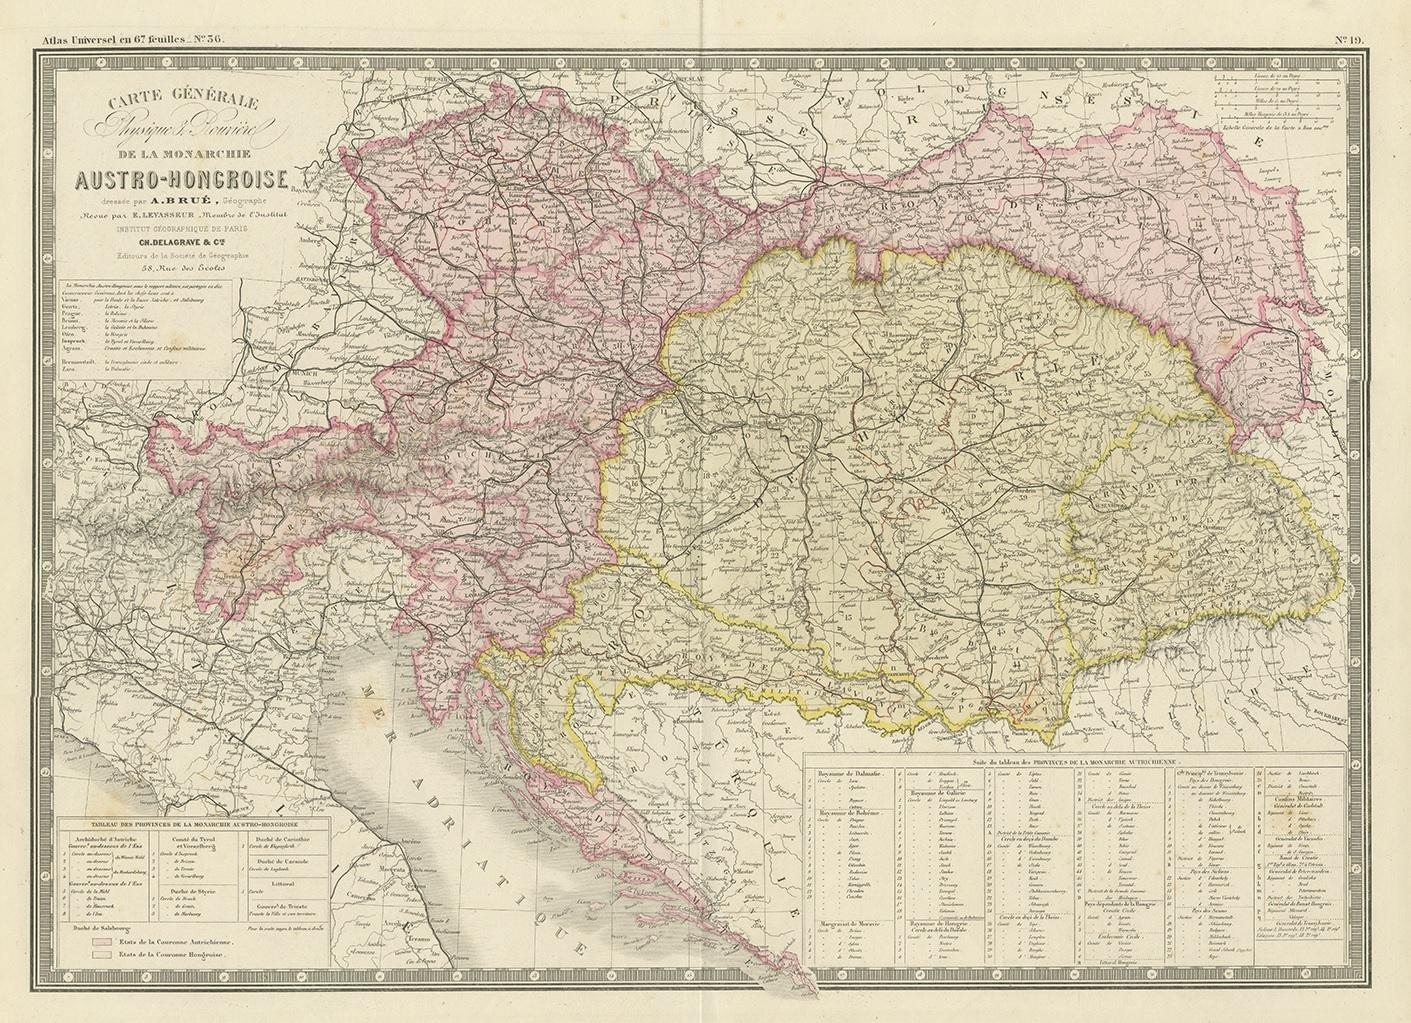 Antique map titled 'Carte générale de la Monarchie Austro-Hongroise (..)'. Large map of Austria-Hungary. This map originates from 'Atlas de Géographie Moderne Physique et Politique' by A. Levasseur. Published 1875.